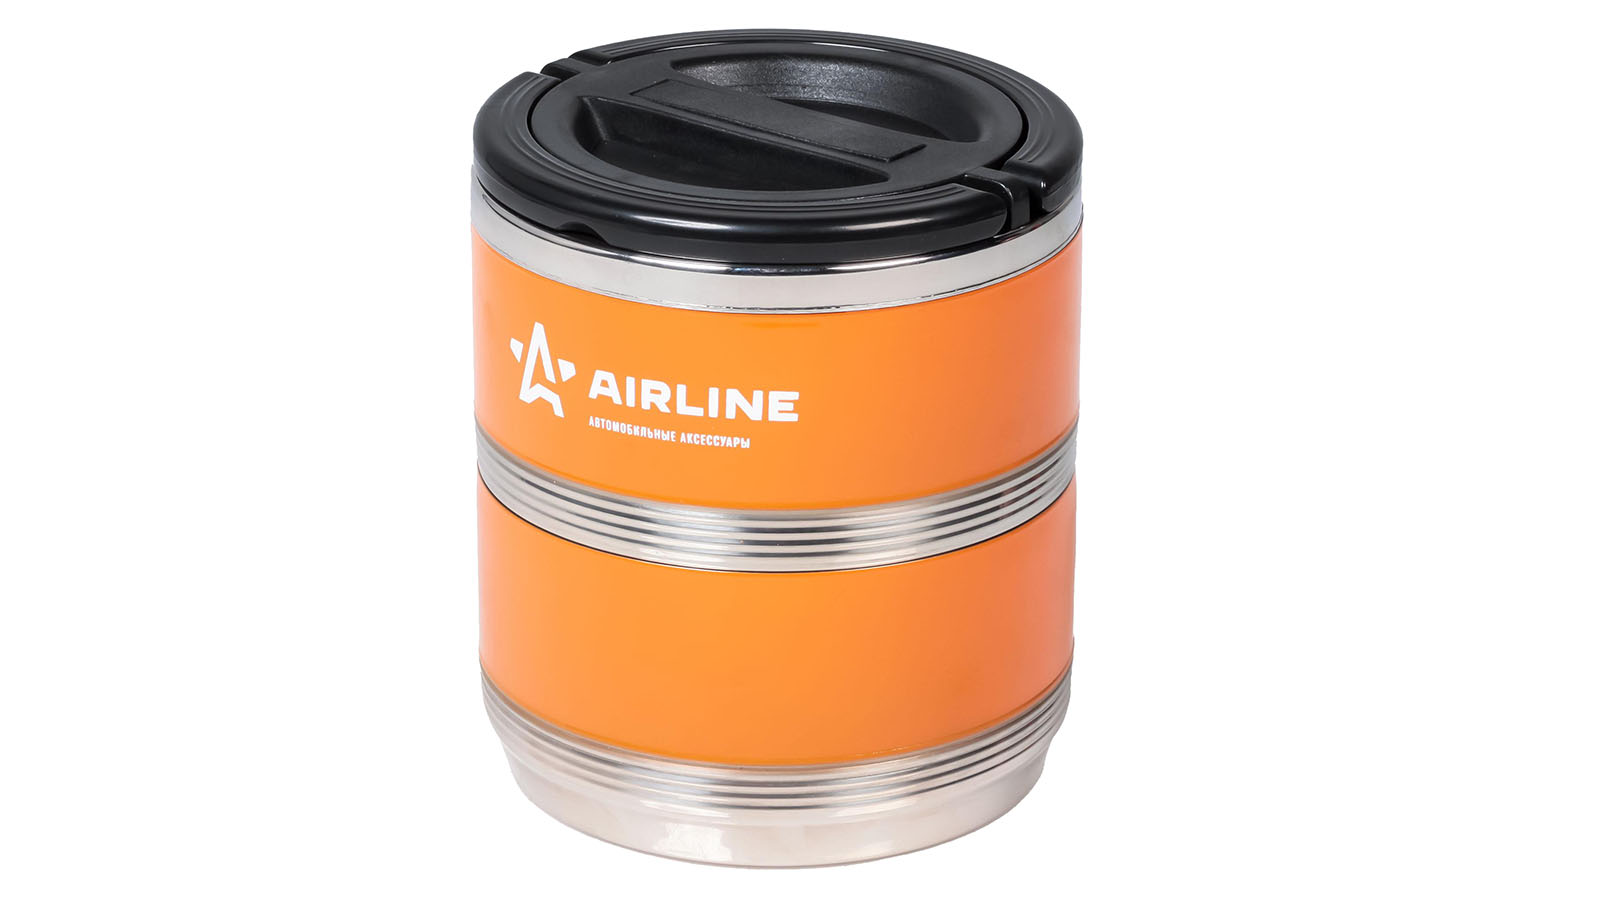 Термос AIRLINE ланч-бокс 1.4л, 2 контейнера с ручкой, нержавеющая сталь оранжево-черный фотография №1